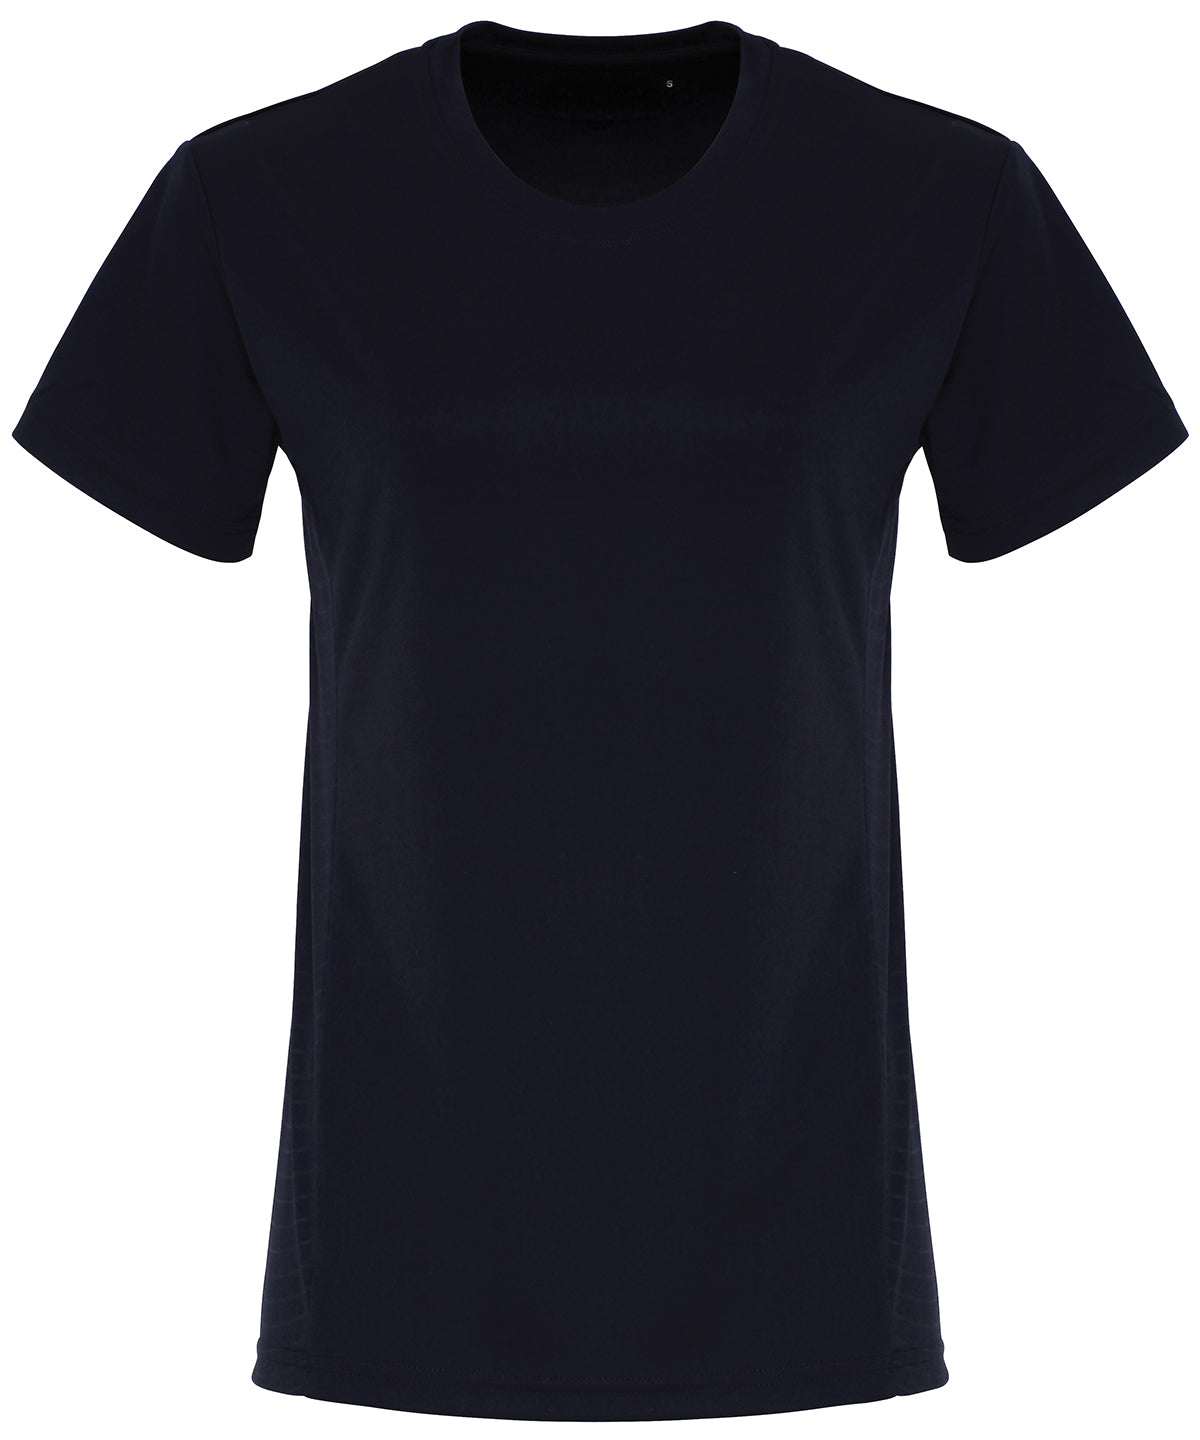 Stuttermabolir - Women's TriDri® Embossed Panel T-shirt